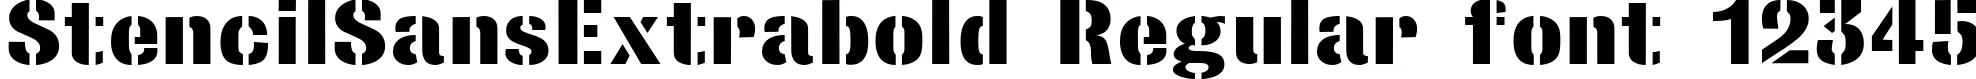 Dynamic StencilSansExtrabold Regular Font Preview https://safirsoft.com